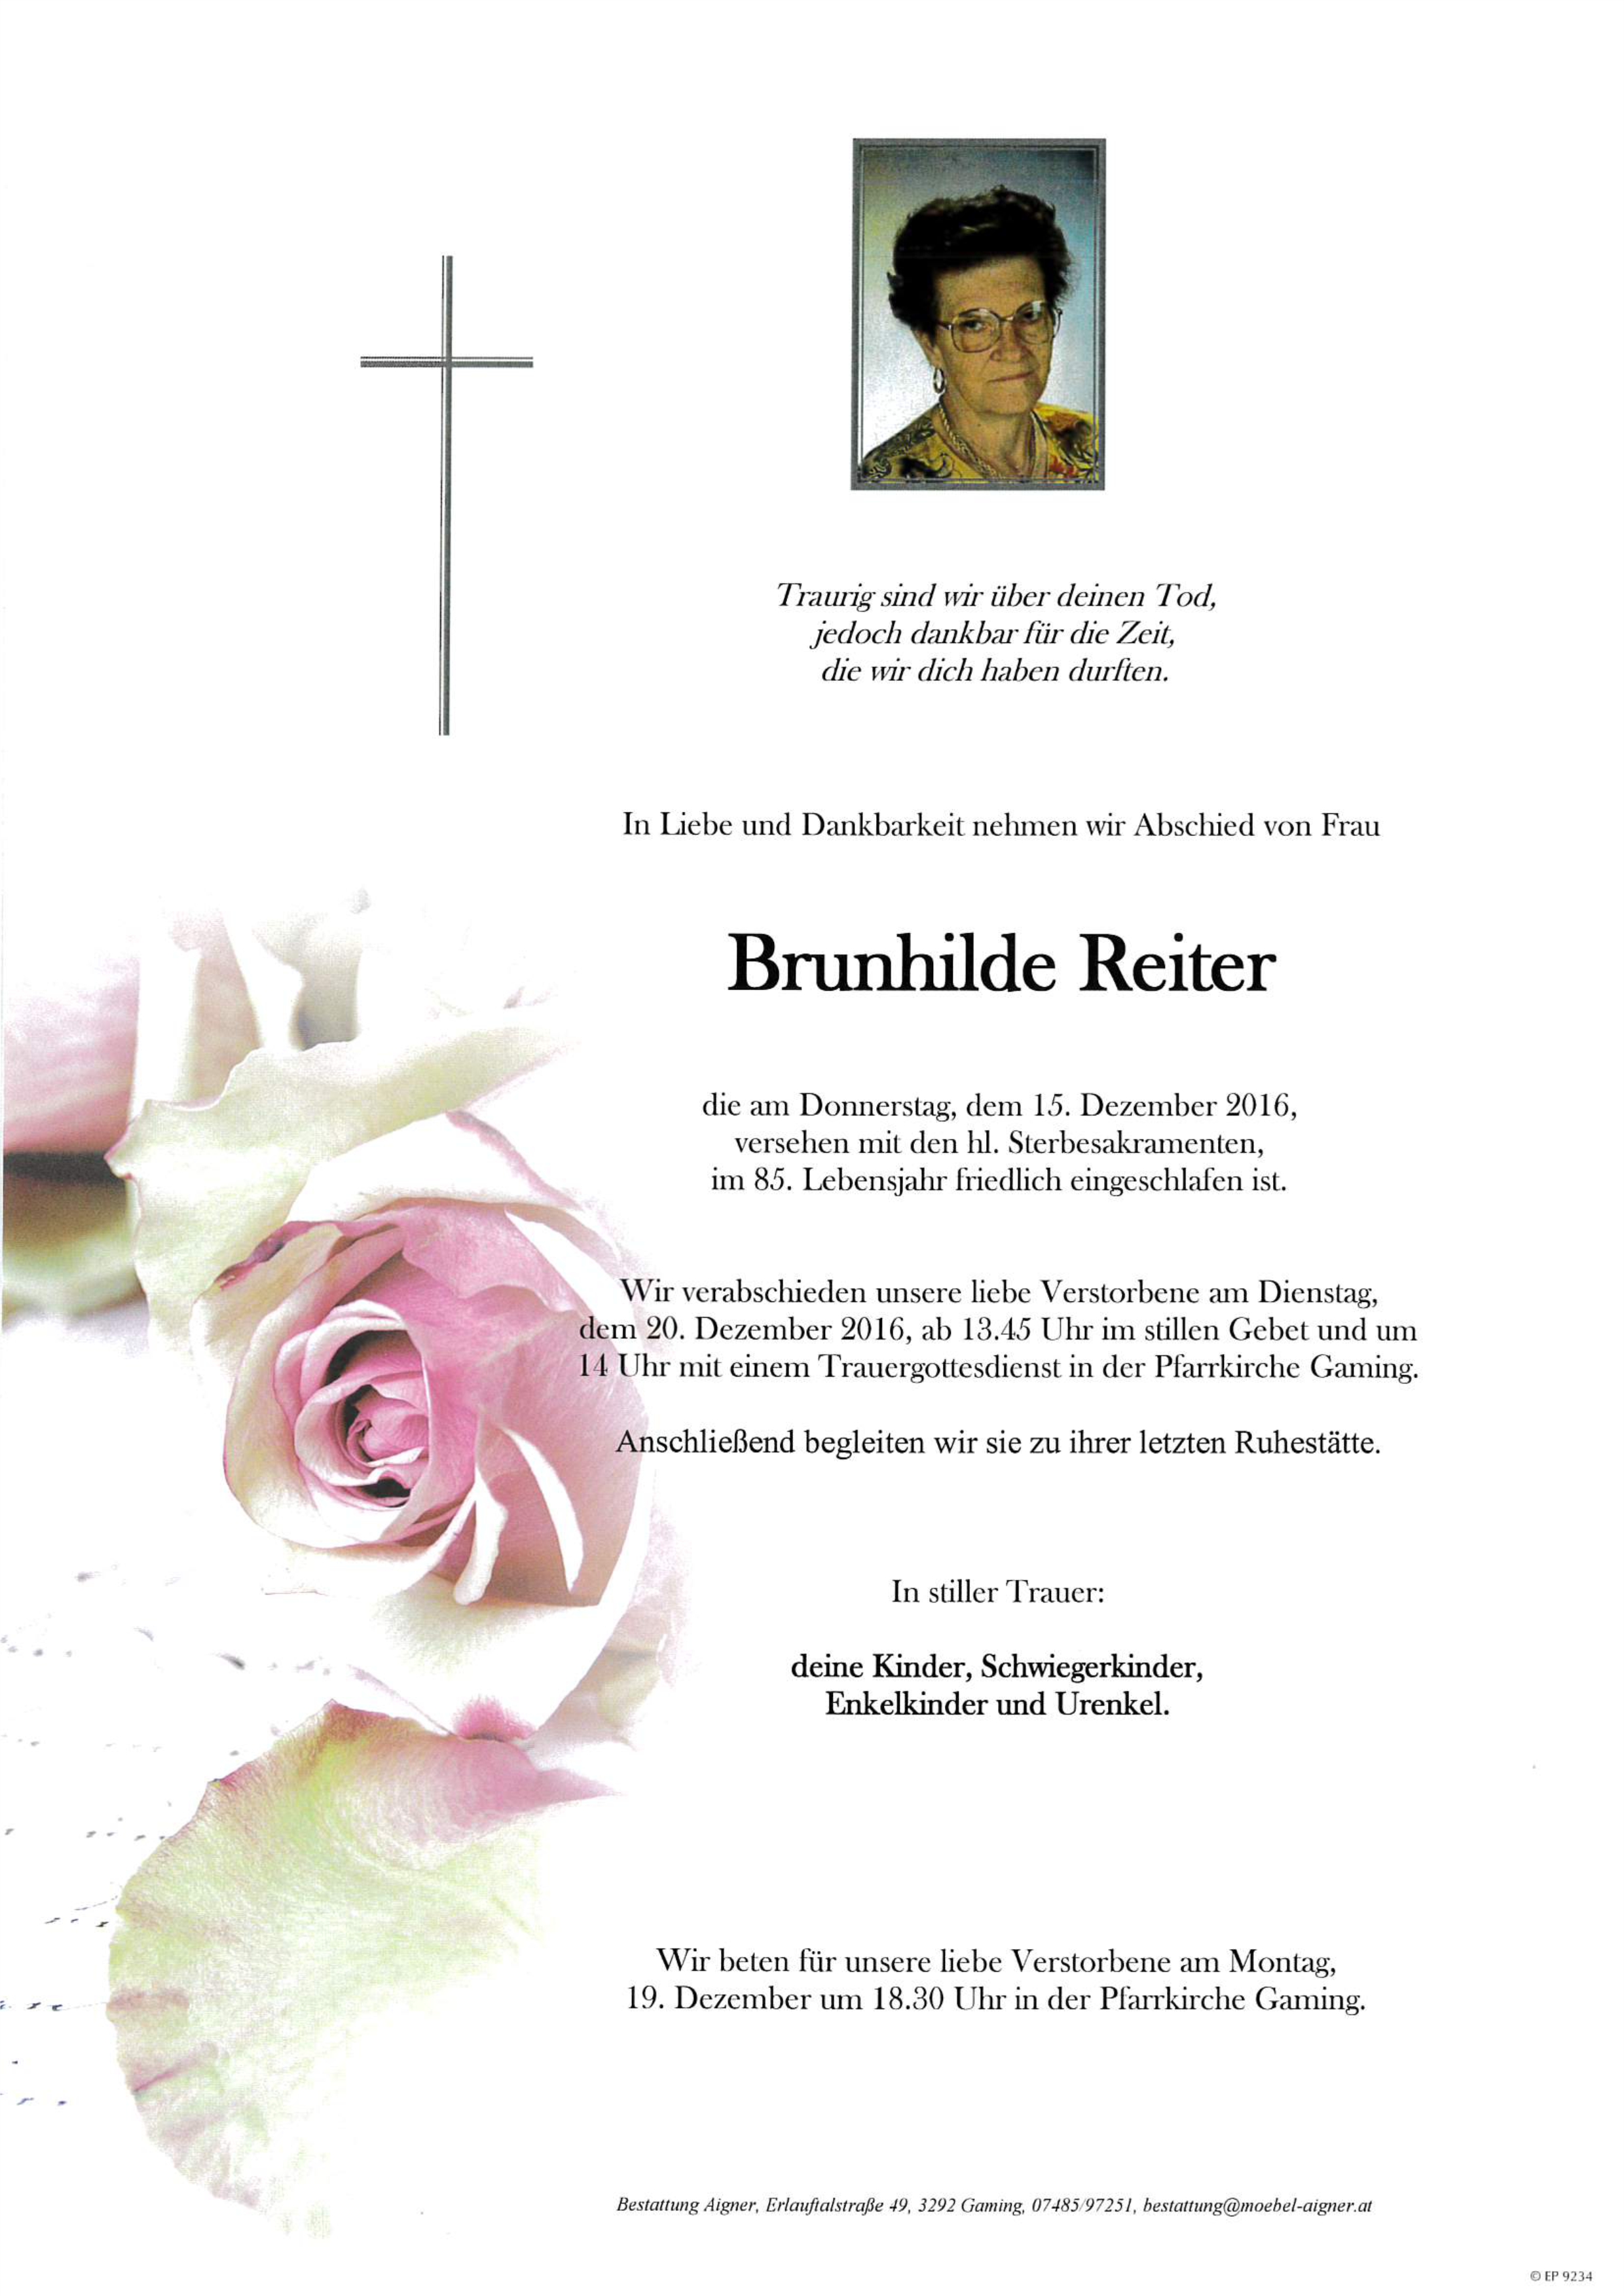 Brunhilde Reiter